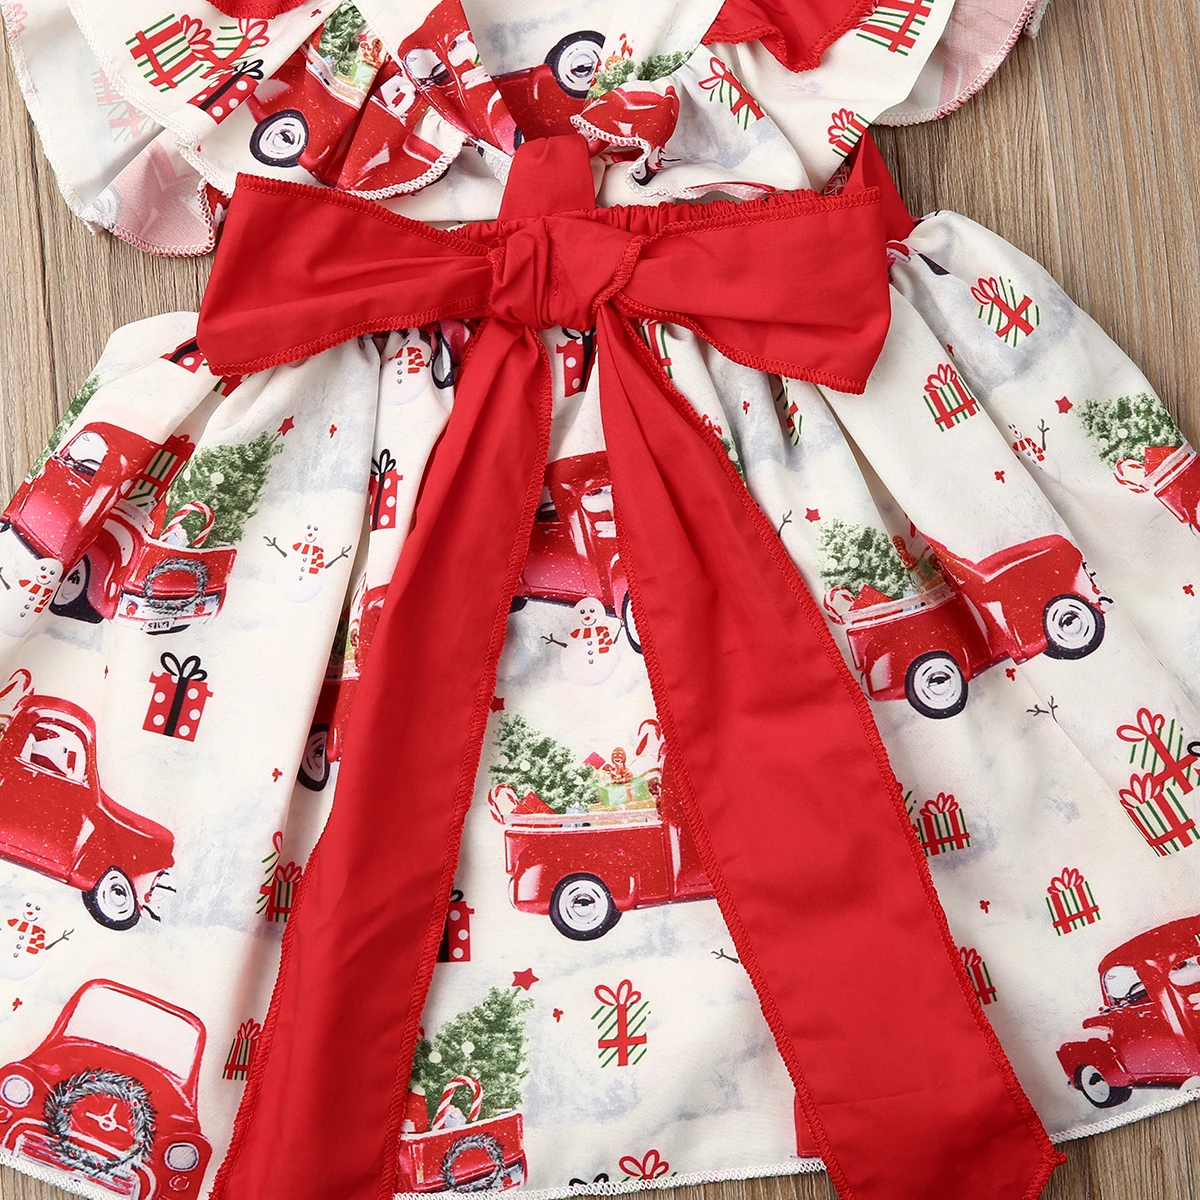 Bebé recién nacido niño niña vestido de Navidad con volantes arco de dibujos animados de Navidad de impresión de la princesa vestido de fiesta ropa de bebé 0